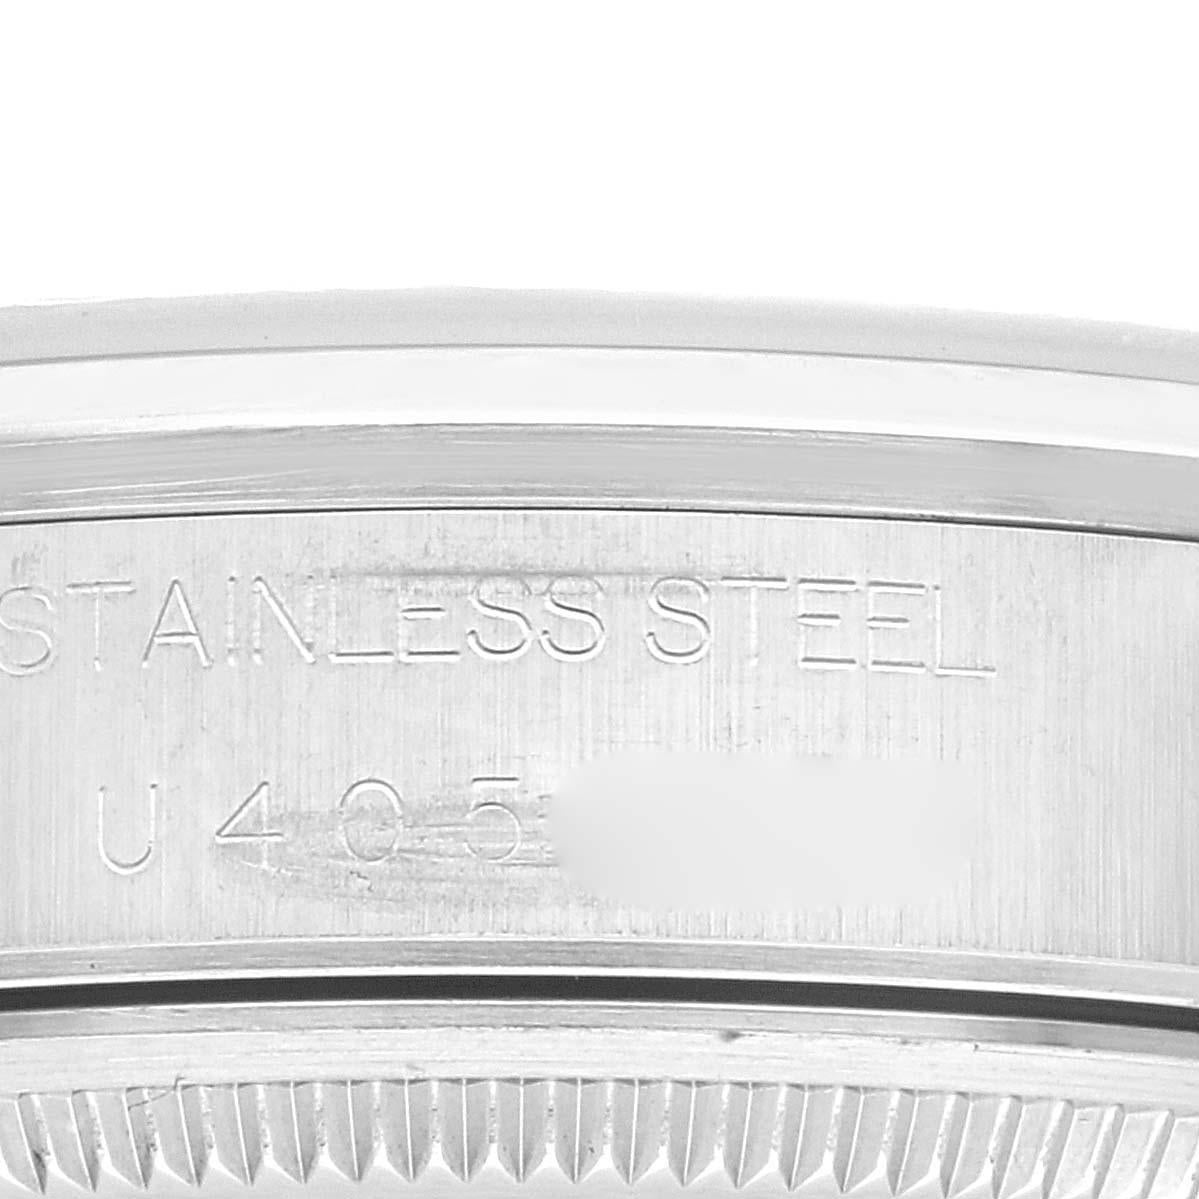 Rolex Air King Lachs Zifferblatt glatte Lünette Stahl Herrenuhr 14000. Automatisches Uhrwerk mit Selbstaufzug. Gehäuse aus Edelstahl mit einem Durchmesser von 34 mm. Rolex Logo auf der Krone. Glatte Lünette aus Edelstahl. Kratzfestes Saphirglas.